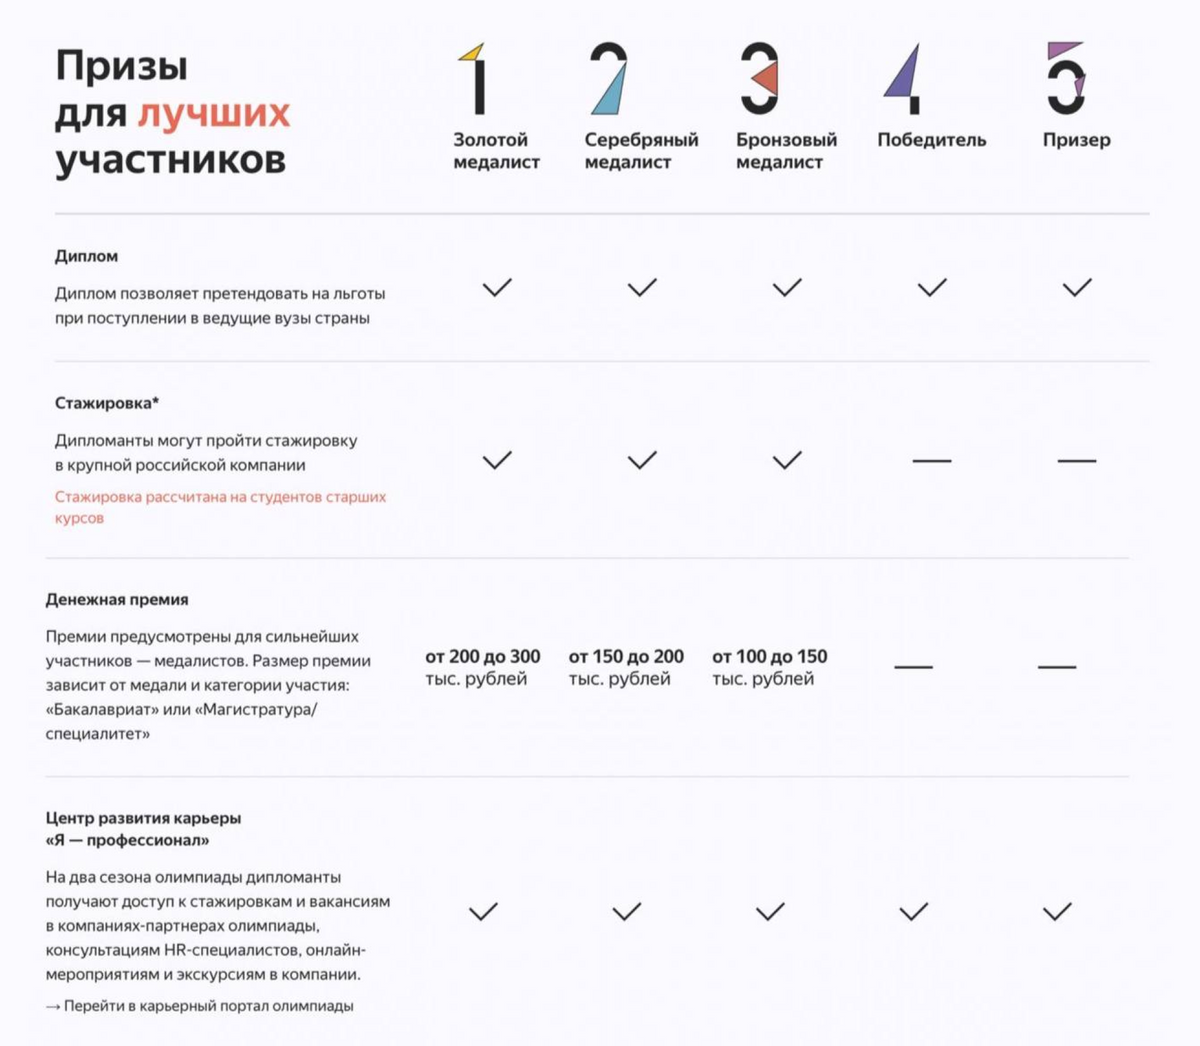 Таблица с распределением наград по призовым местам. Источник: «Яндекс»